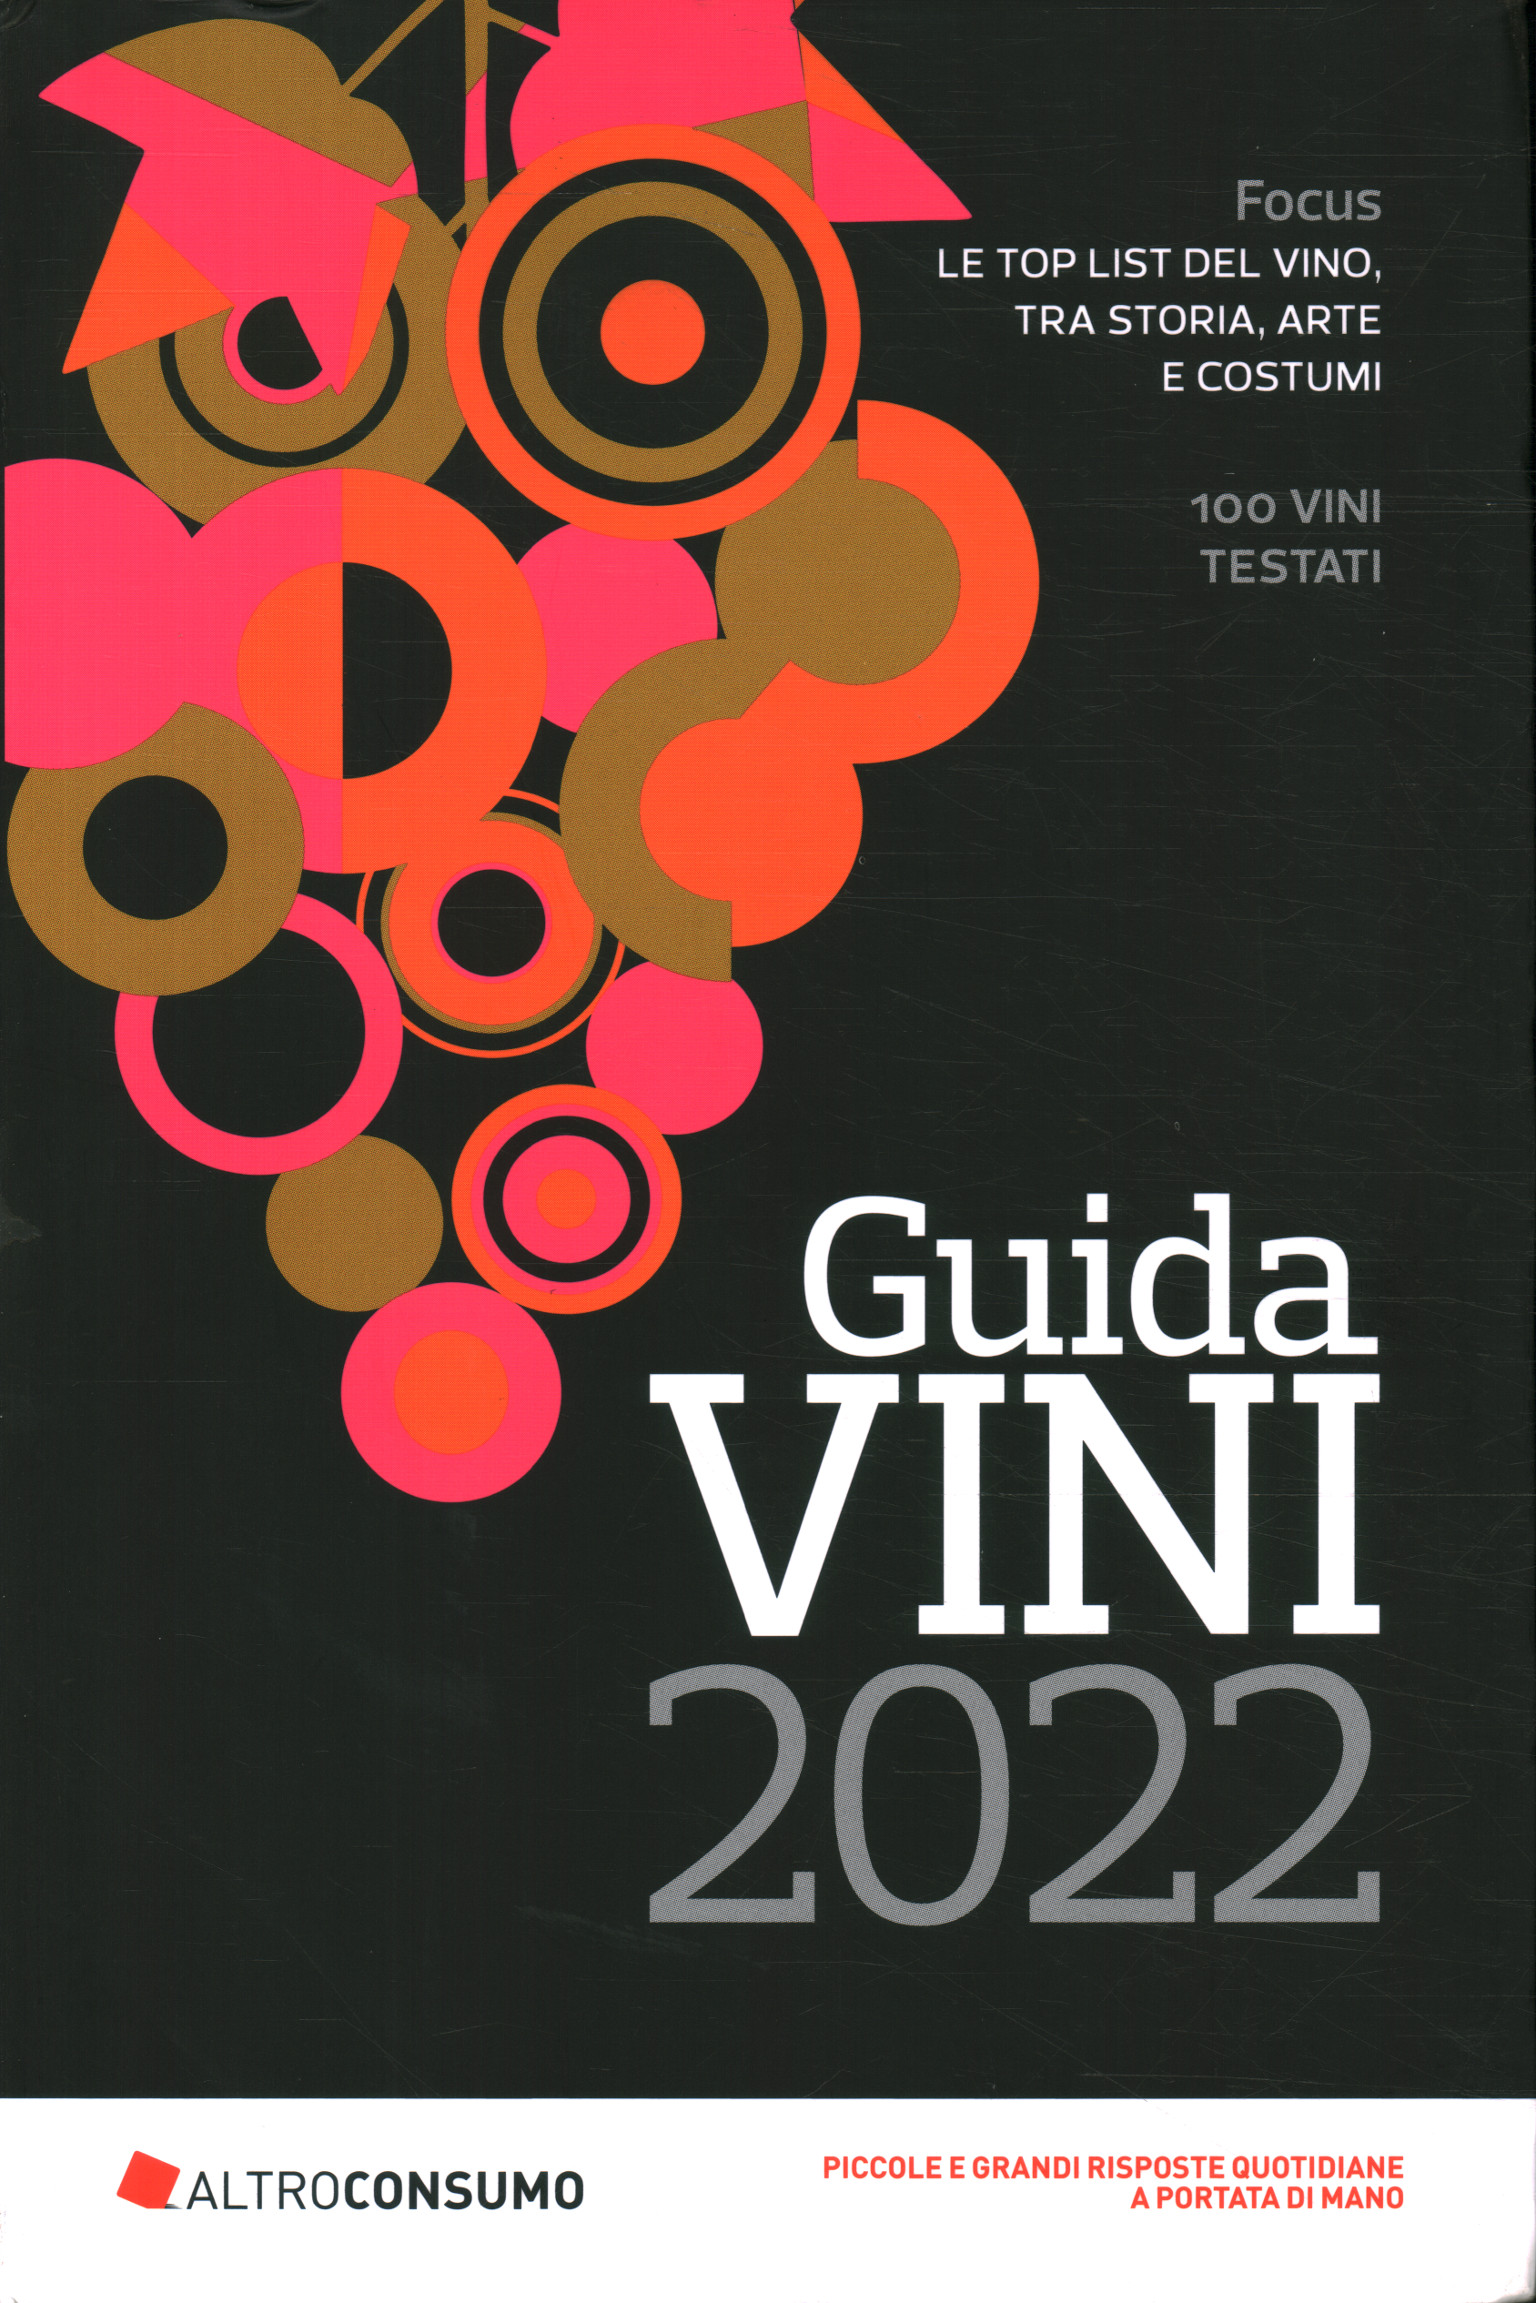 Wine guide 2022